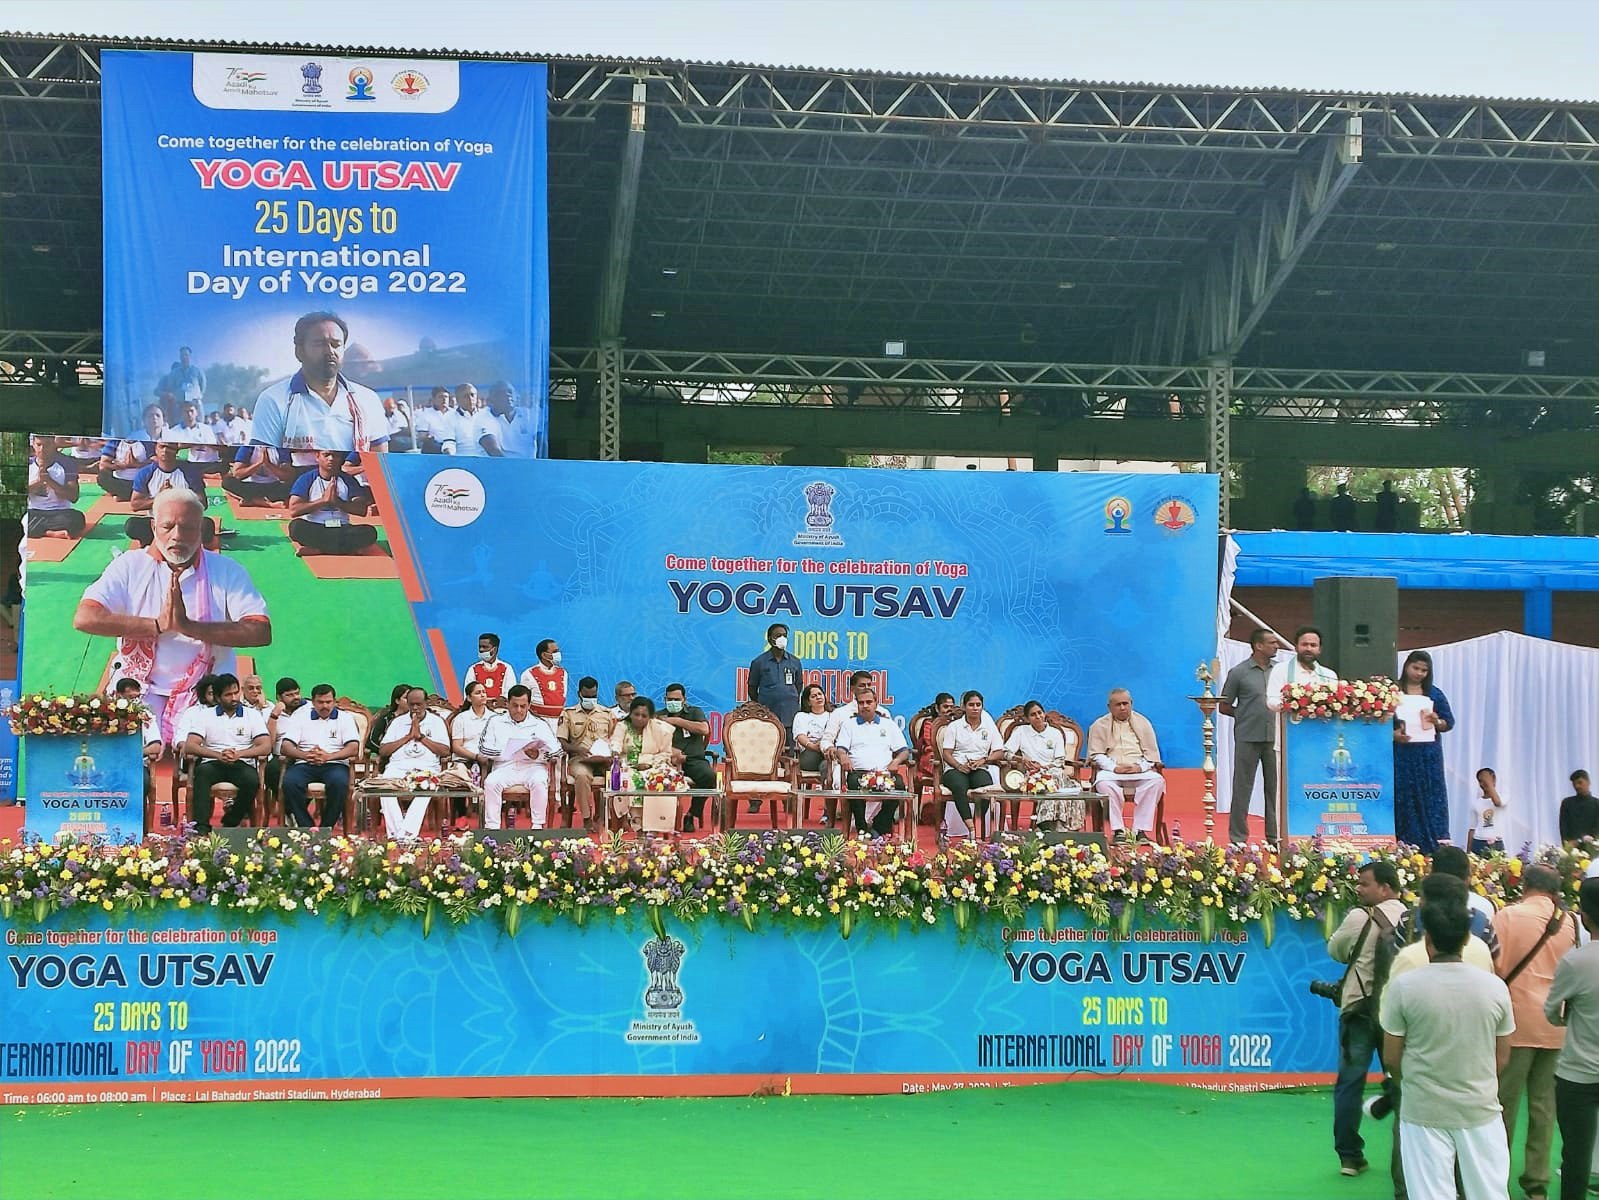 हैदराबाद के एलबी स्टेडियम में योगा उत्सव 2022